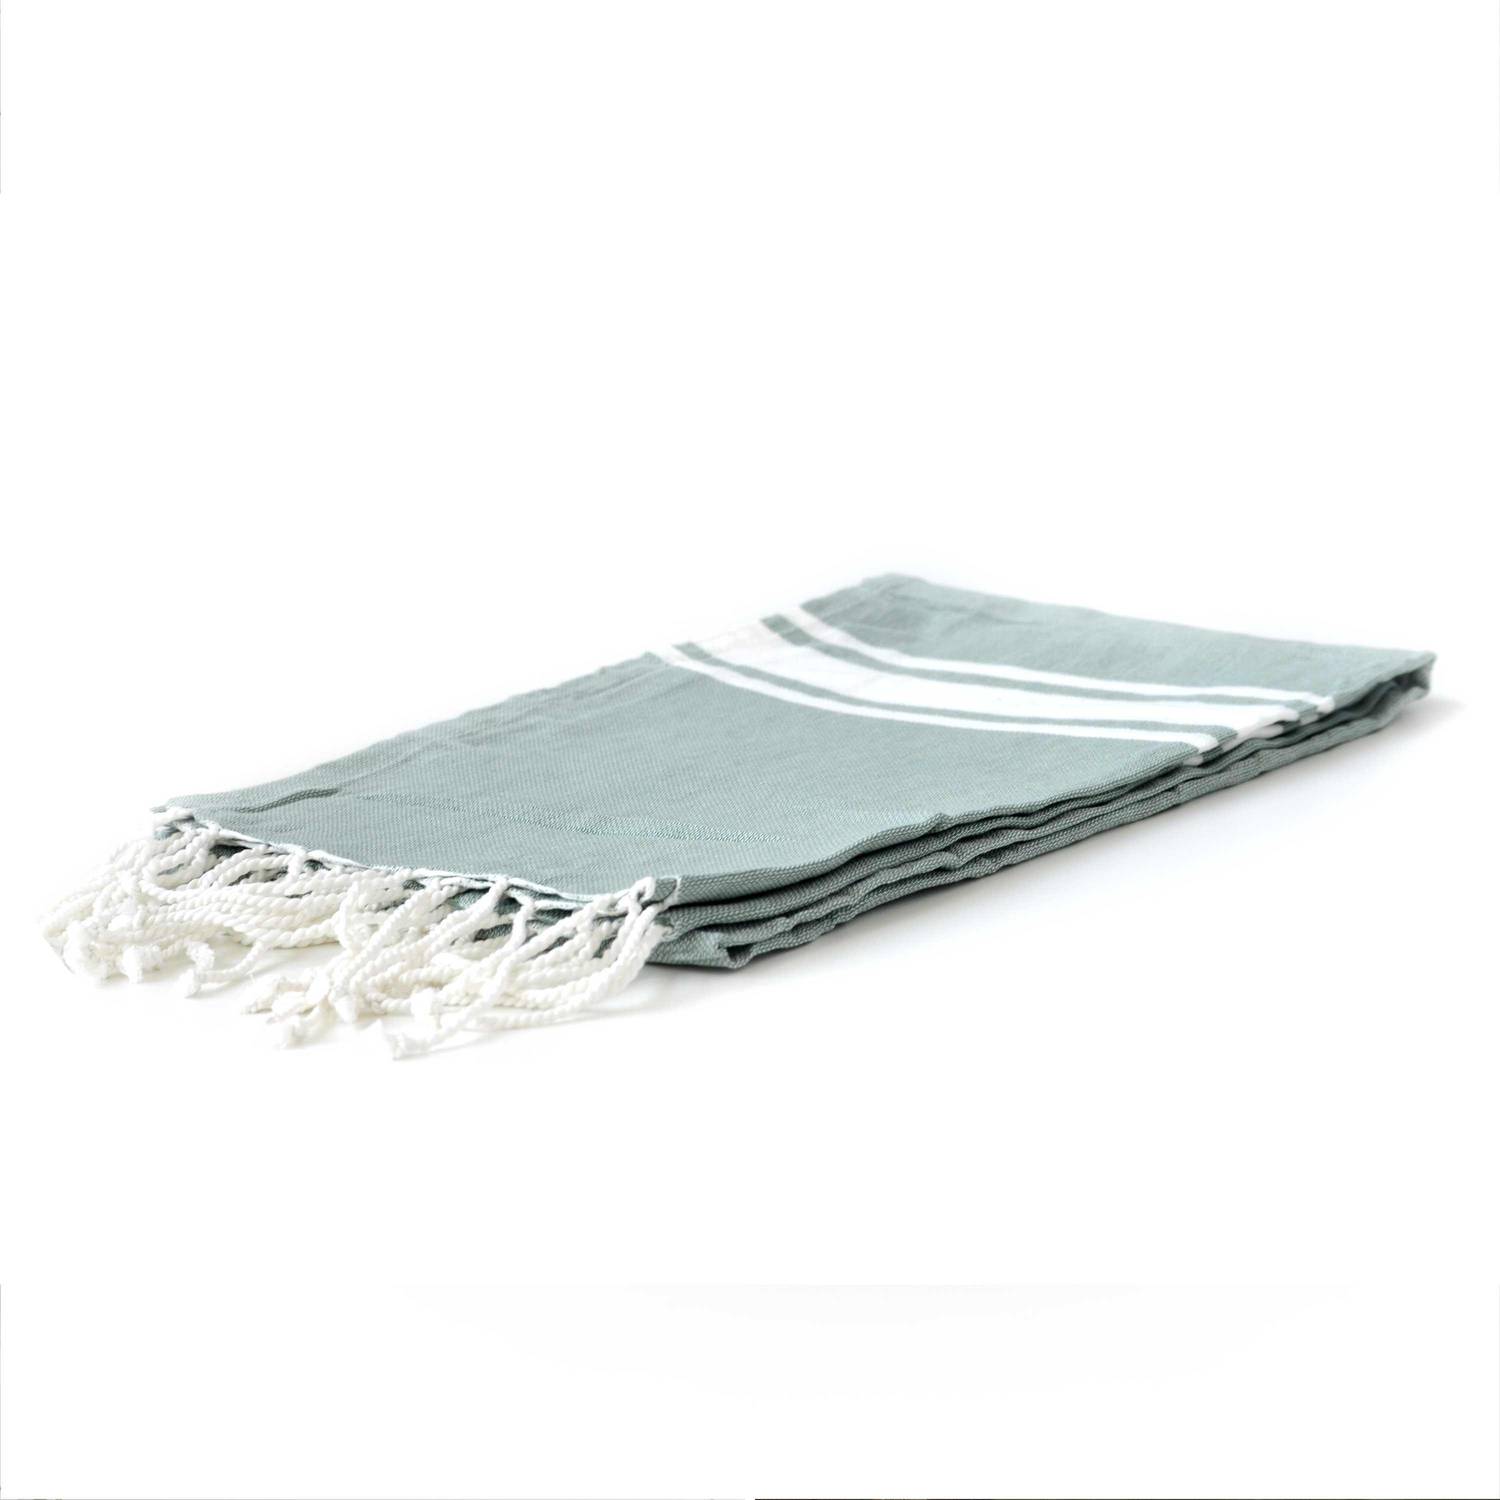 Fouta – 190x100cm – Vert de gris, serviette Tunisienne, 100% coton, rectangulaire Photo2